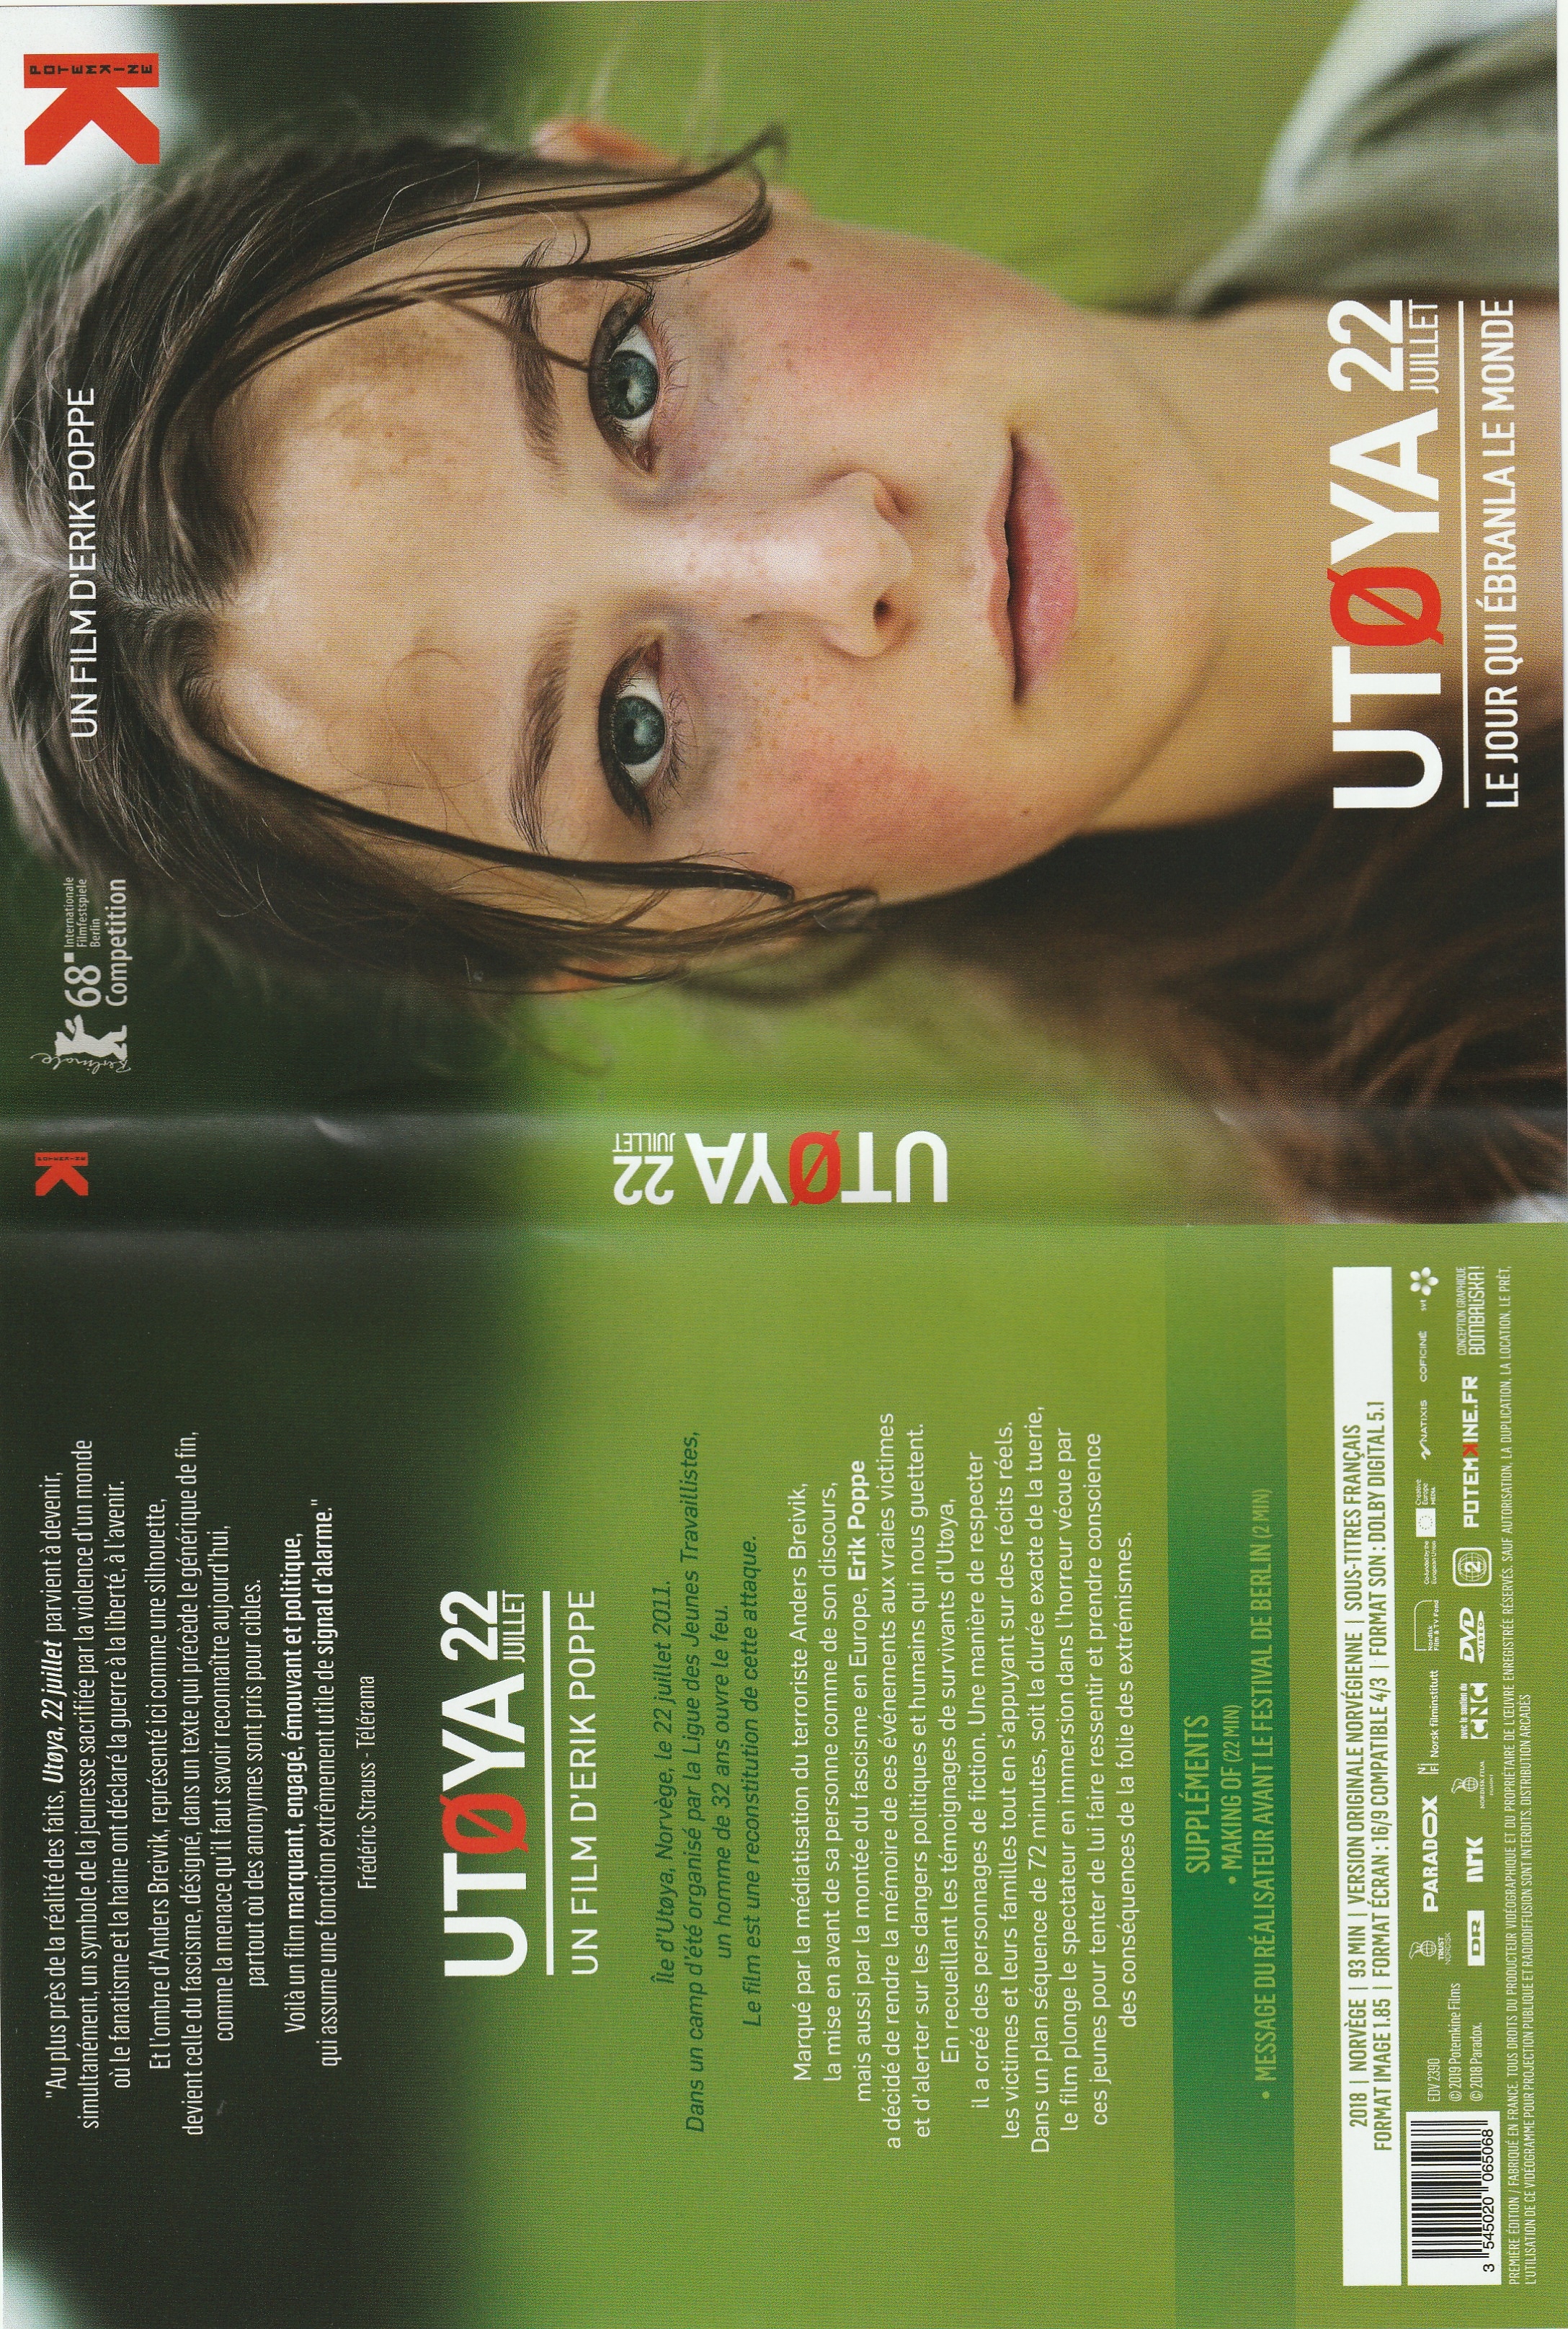 Jaquette DVD Utoya 22 Juillet